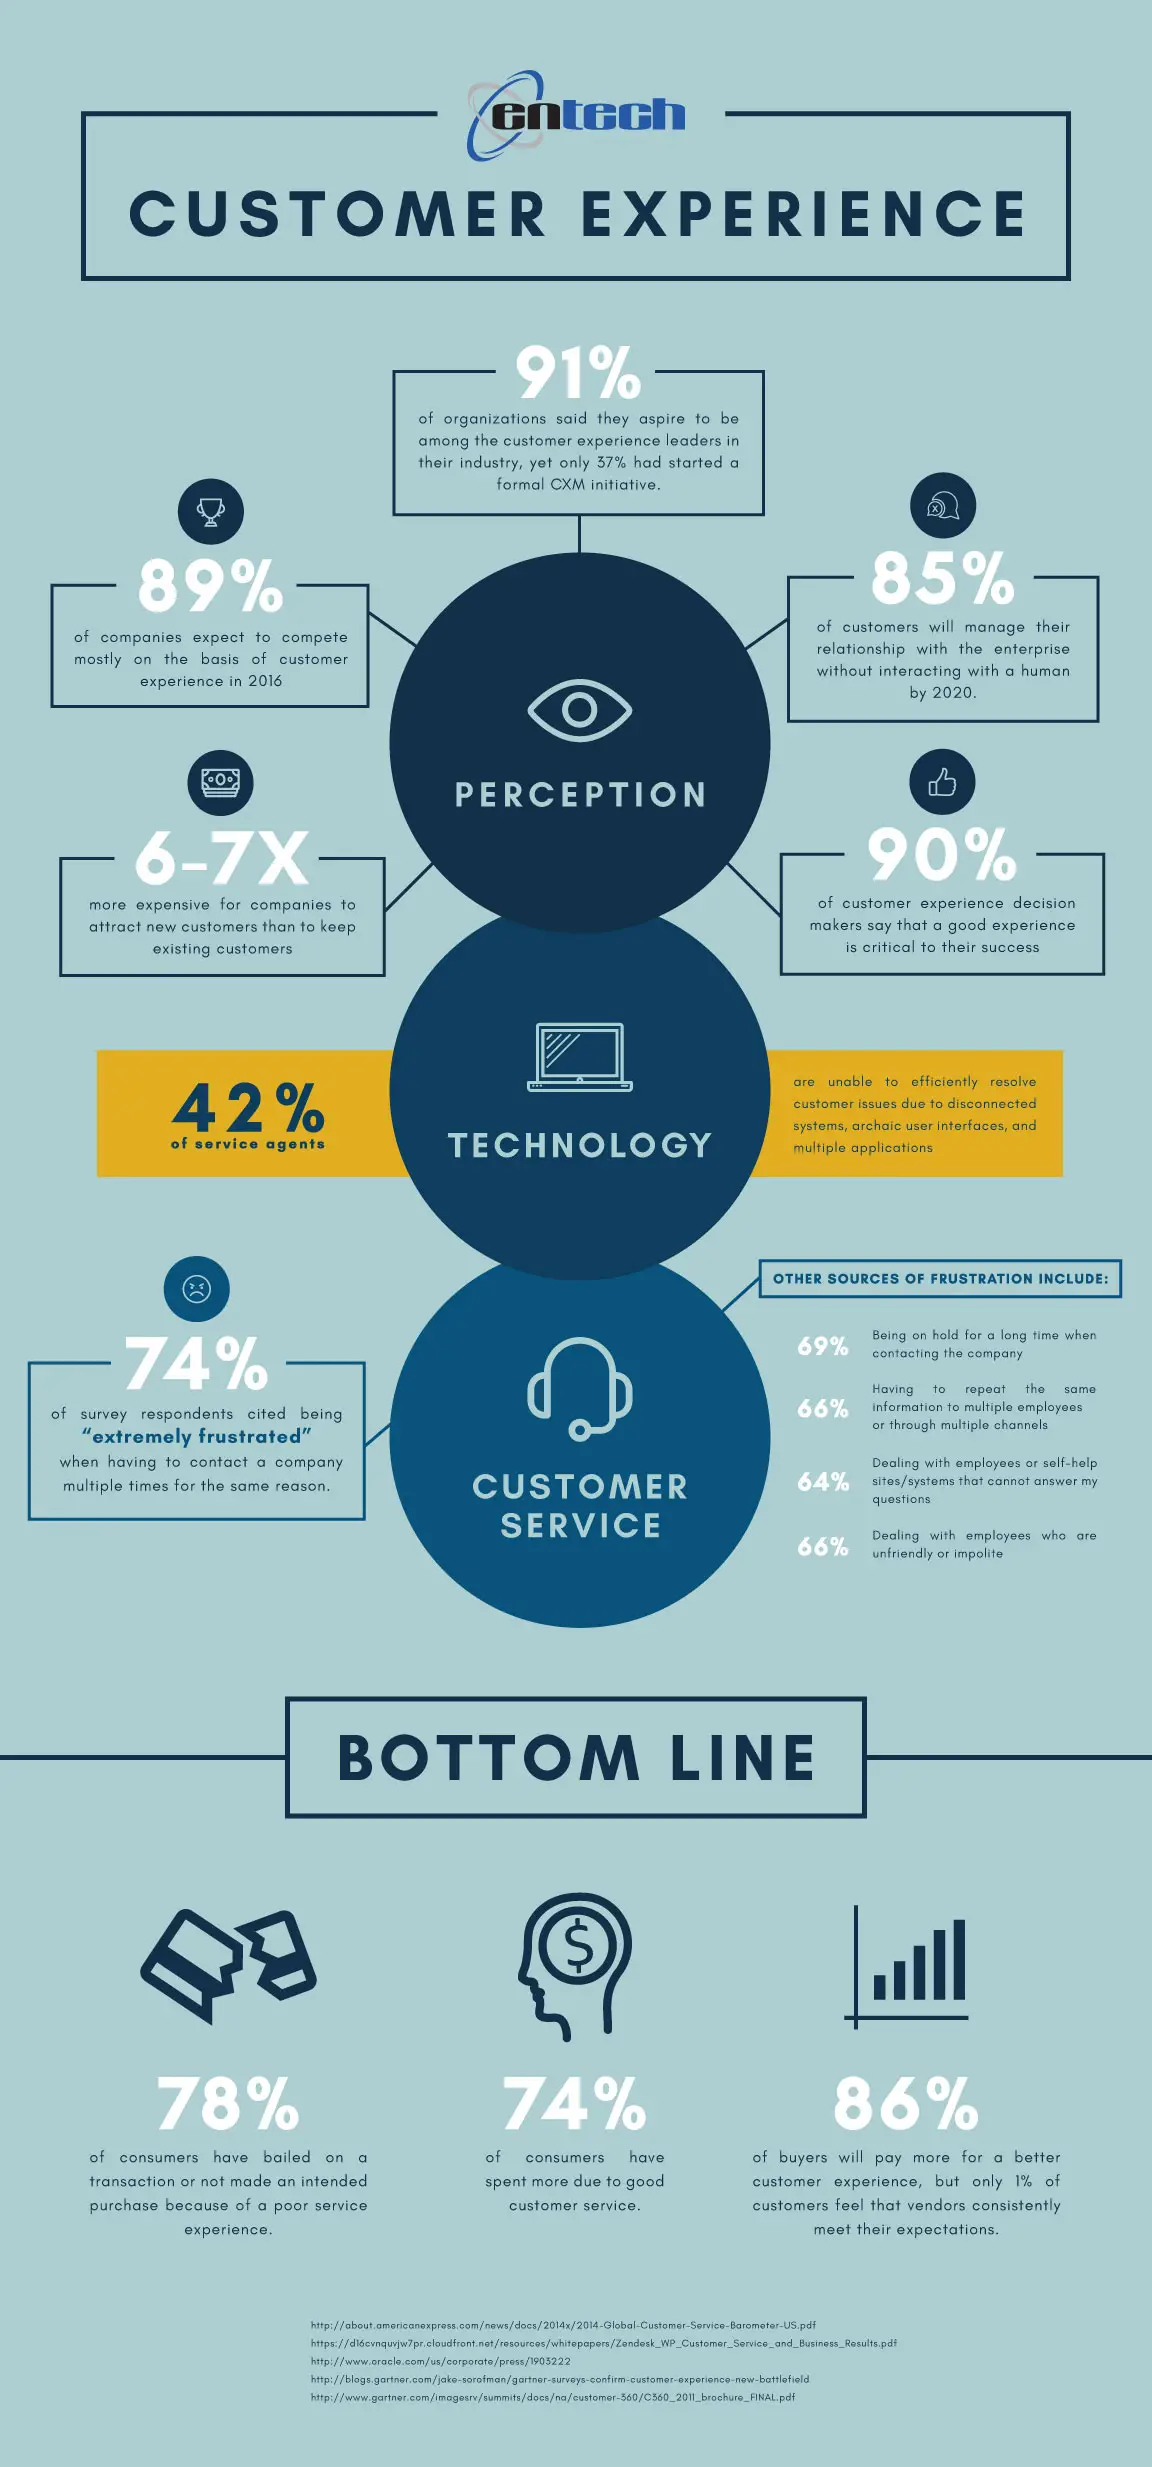 Customer Experience Statistics - Entech Infograph